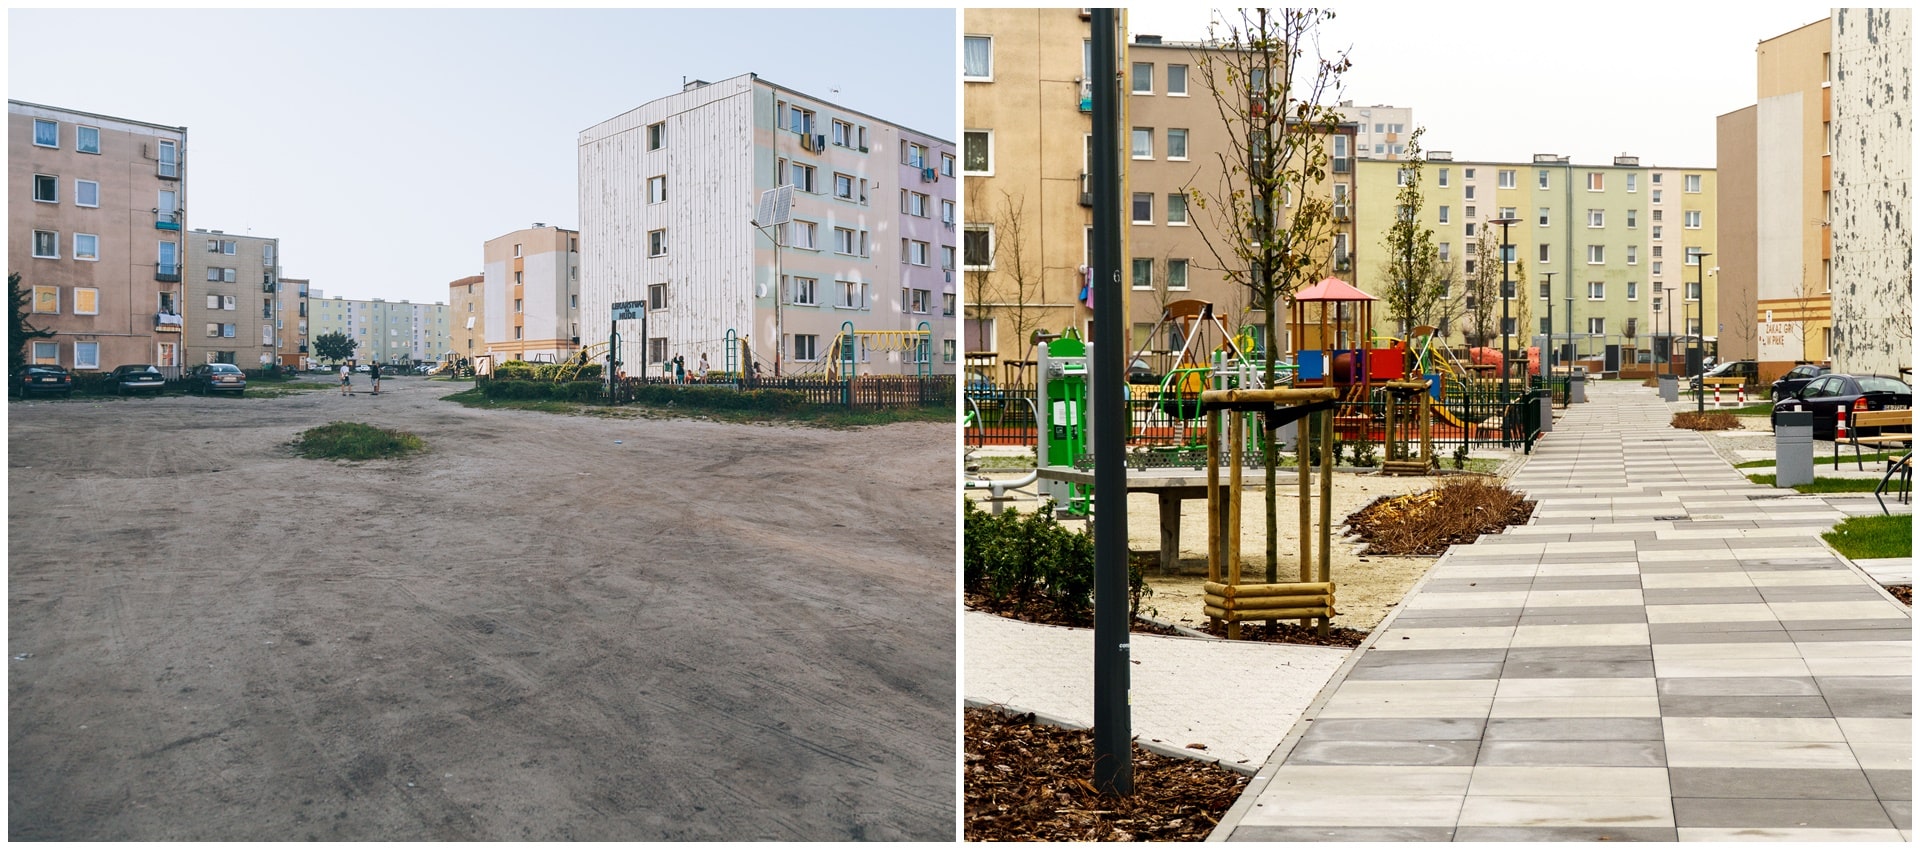 Dwa połączone zdjęcia przedstawiające na jednym utwardzoną, pustą przestrzeń między blokami, a na drugim przestrzeń między blokami z chodnikiem i placem zabaw